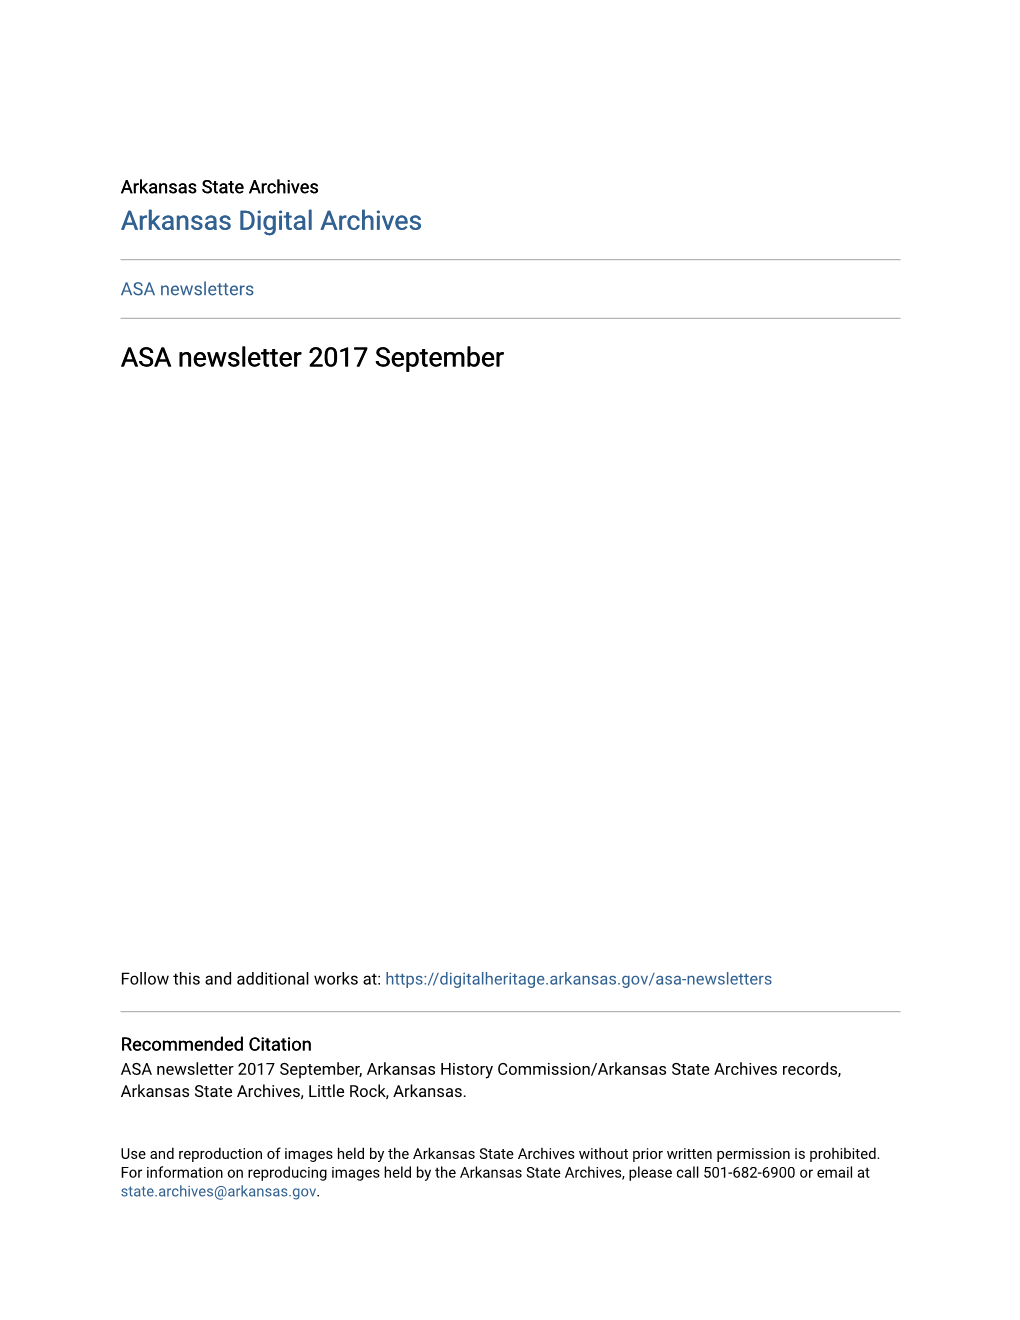 ASA Newsletter 2017 September